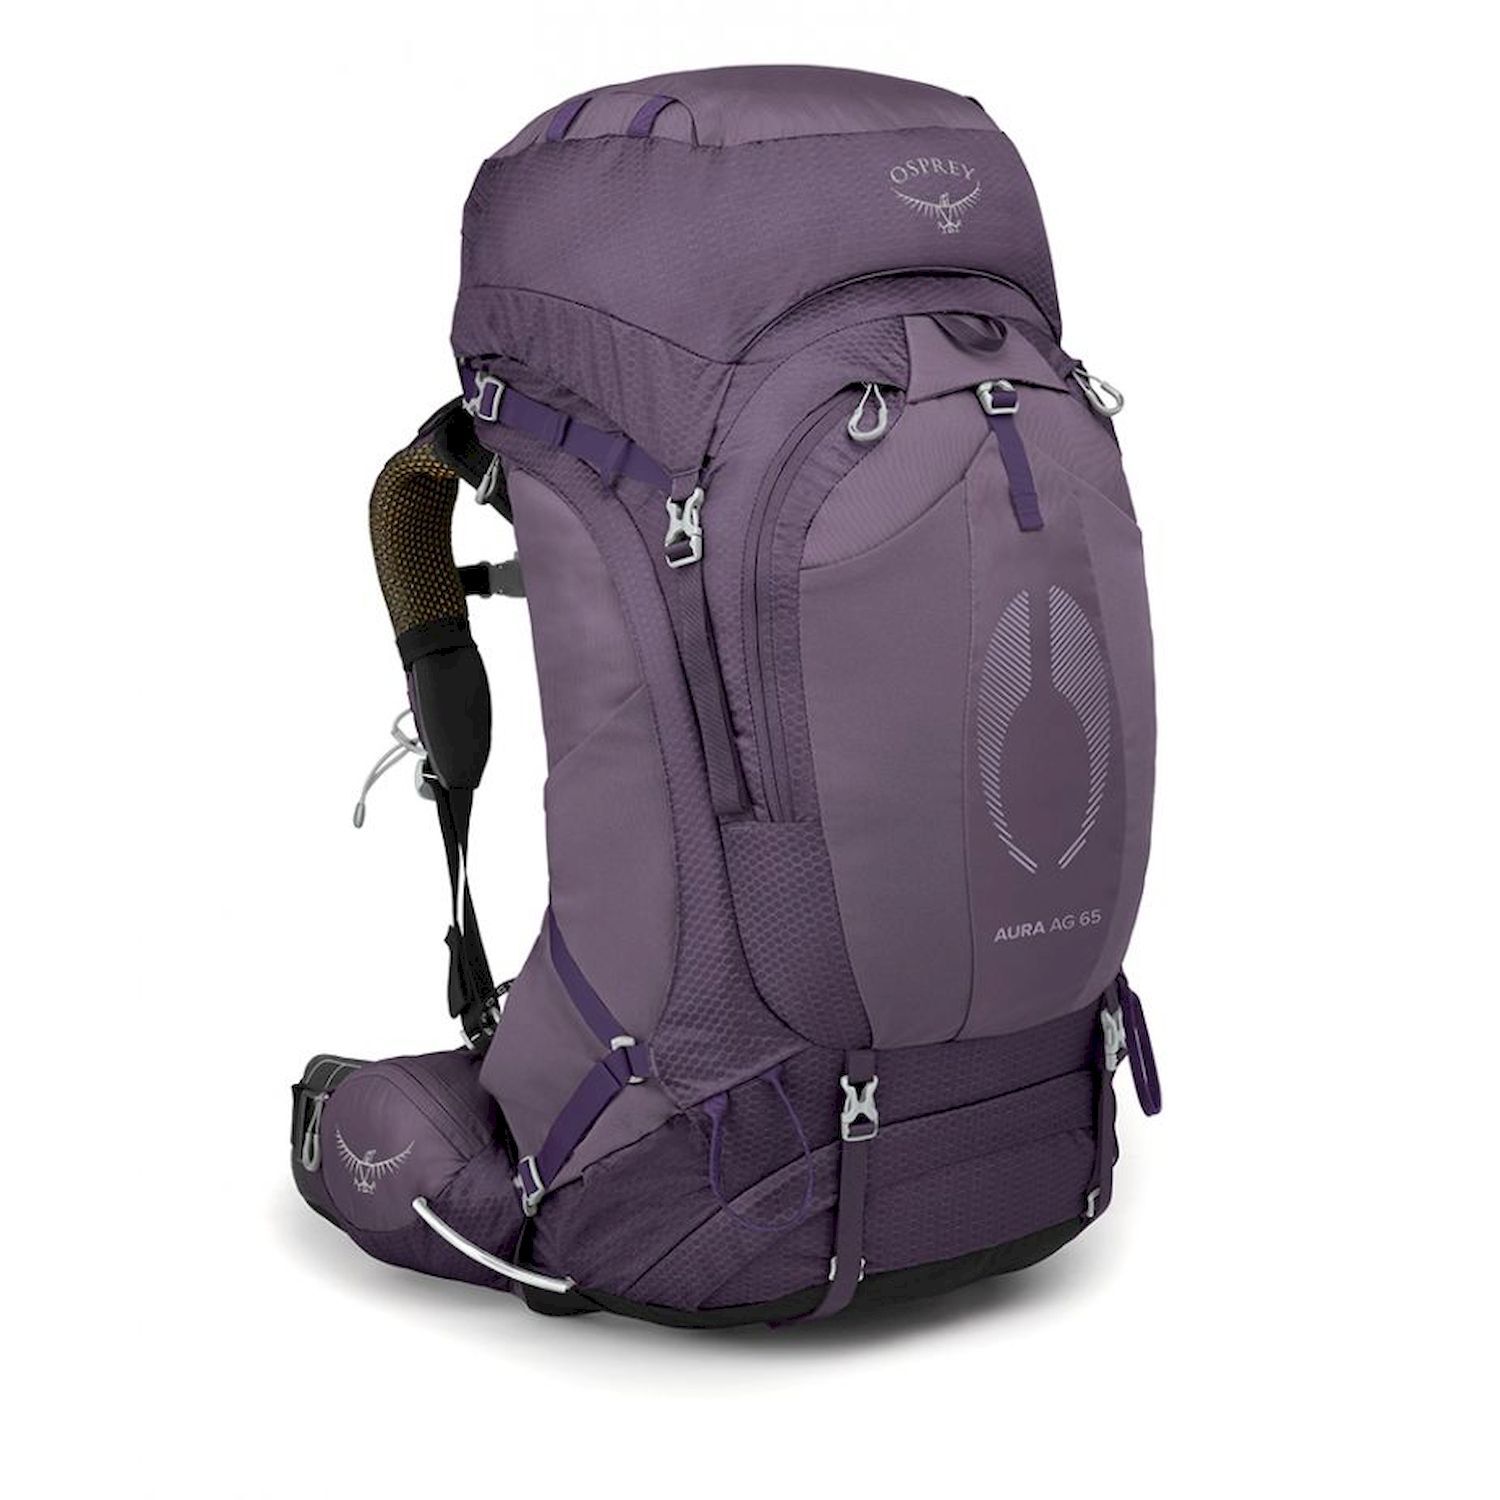 Osprey Aura AG 65 - Hiking backpack - Women's